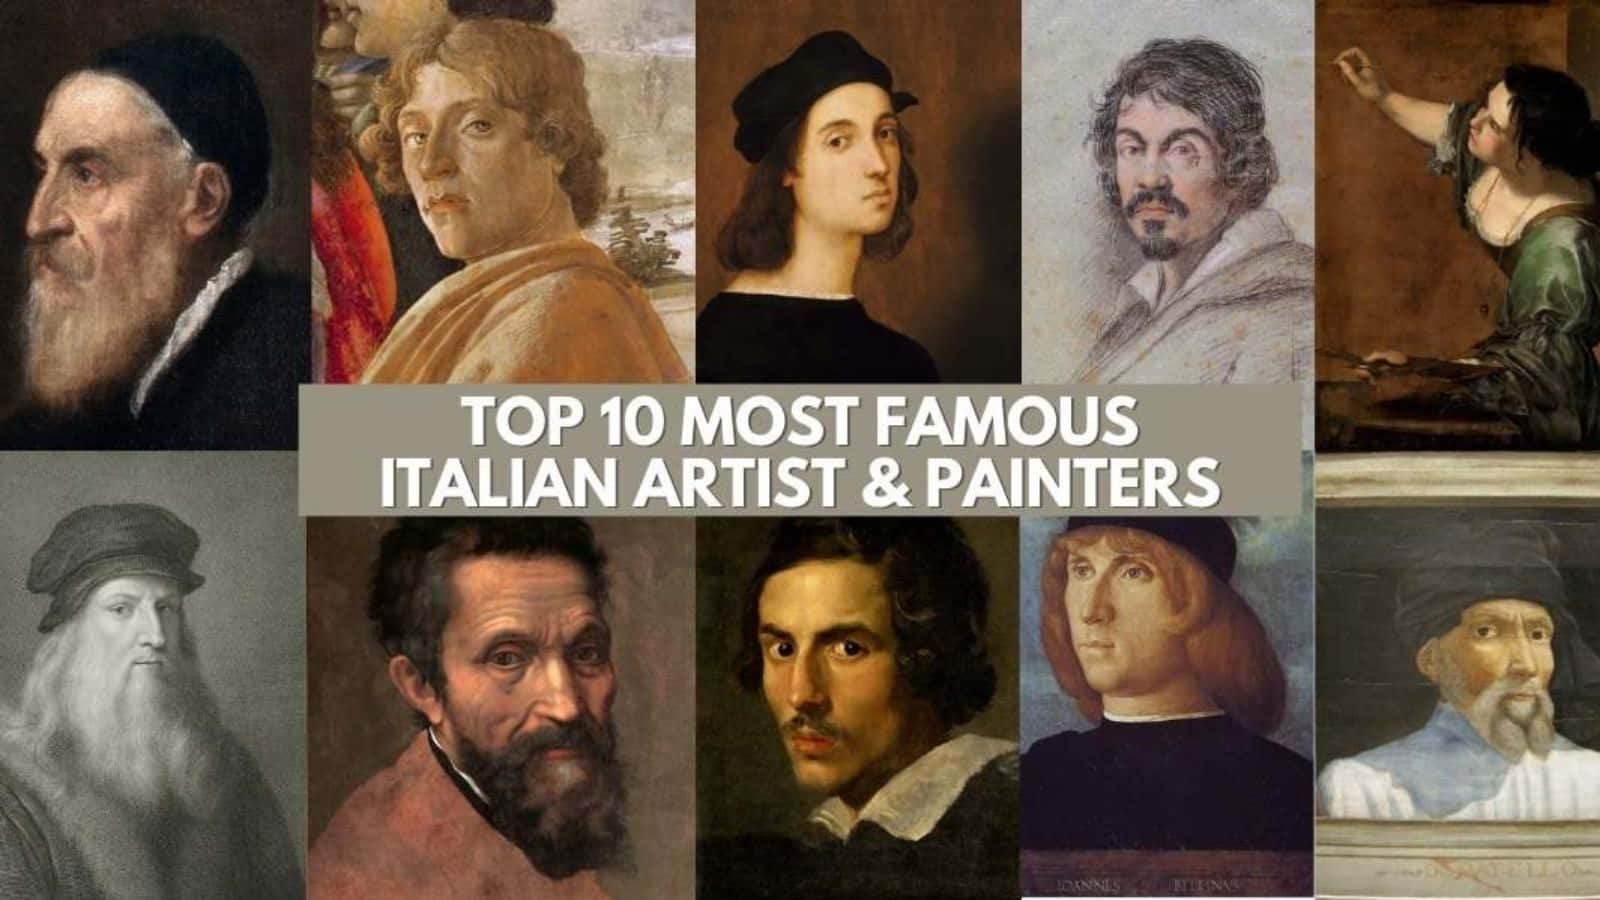 Dietop 10 Der Berühmtesten Italienischen Künstler Und Maler.